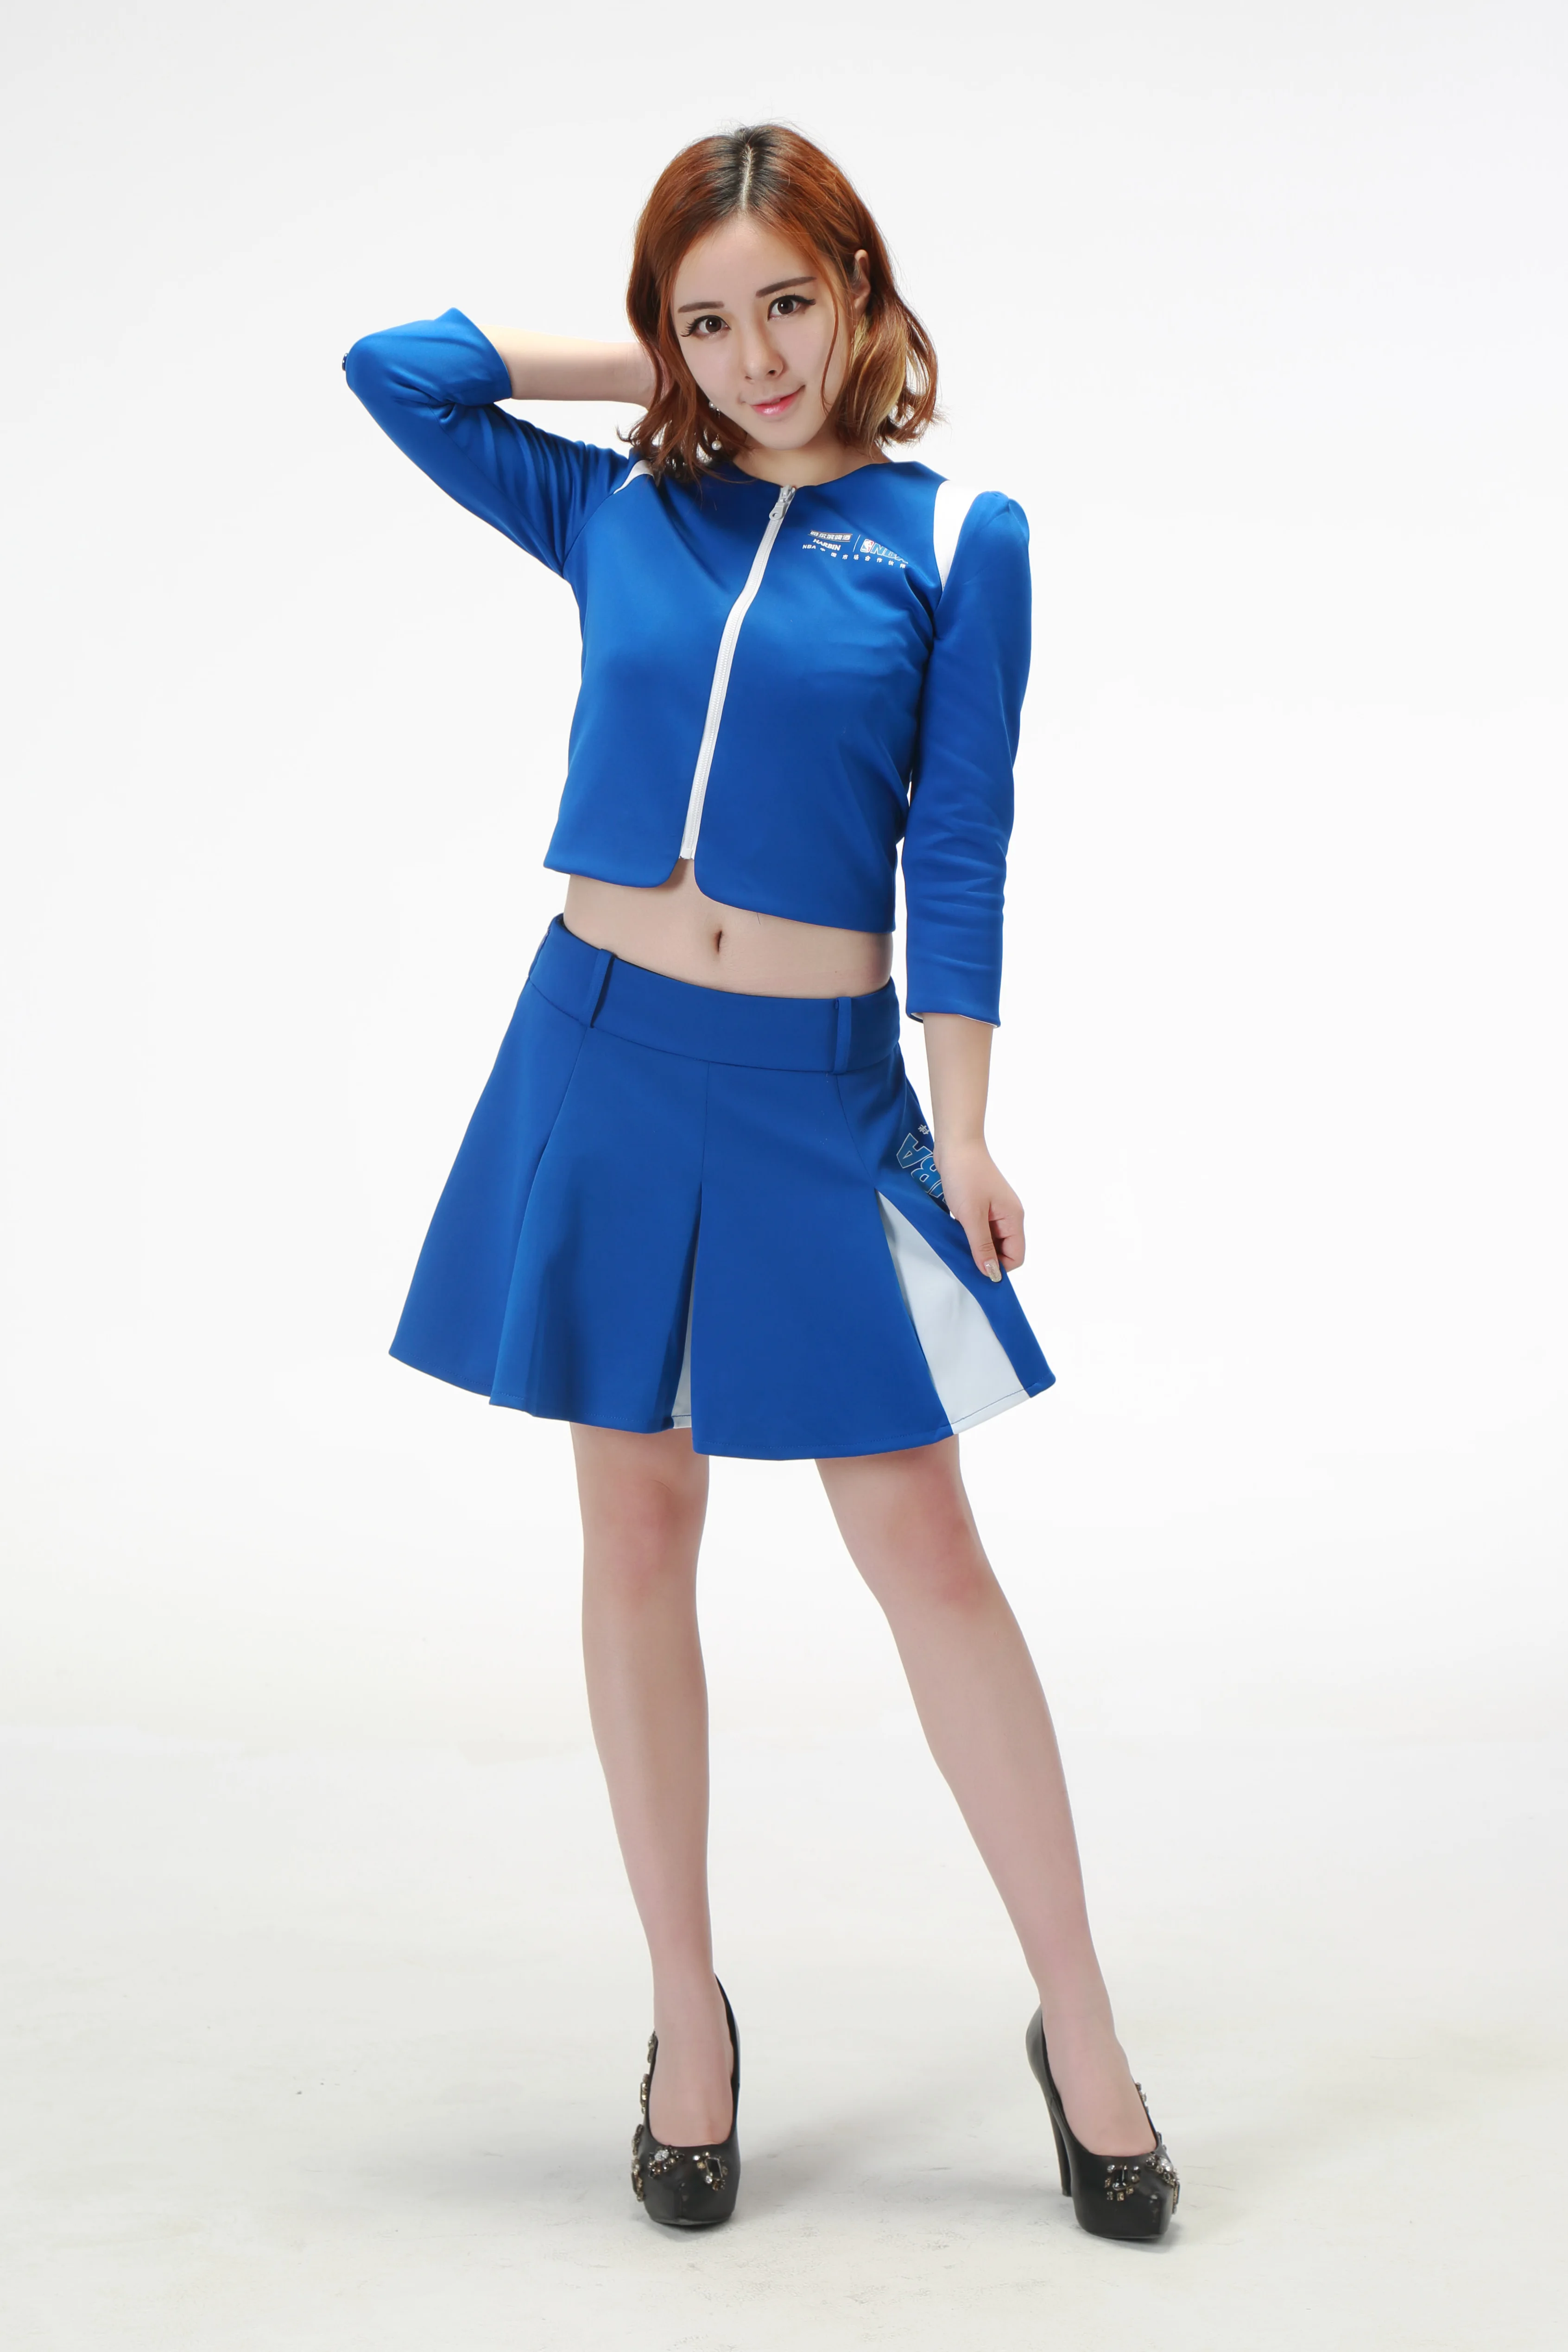 100% Polyester Women Skirt Promotion Uniforms Custom Blue Skirt